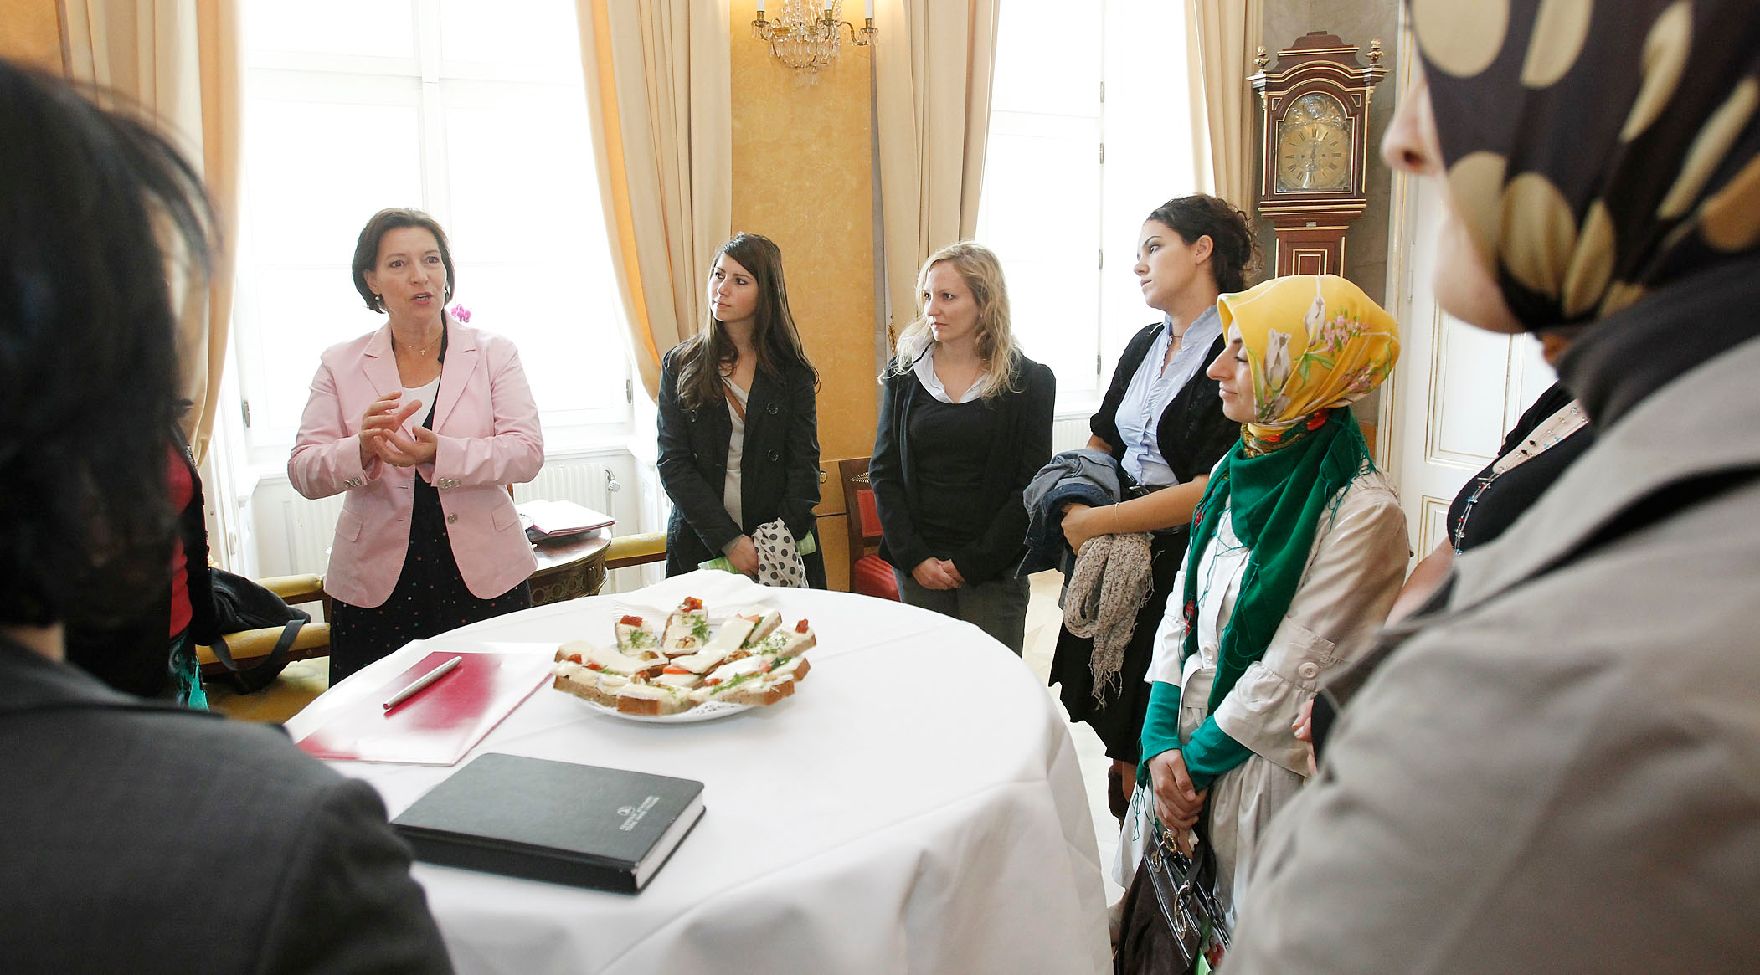 Empfang bei Frauenministerin Gabriele Heinisch-Hosek (L) zum Thema Frauenplattform Türkei - Österreich am 14. September 2010 im Bundeskanzleramt.